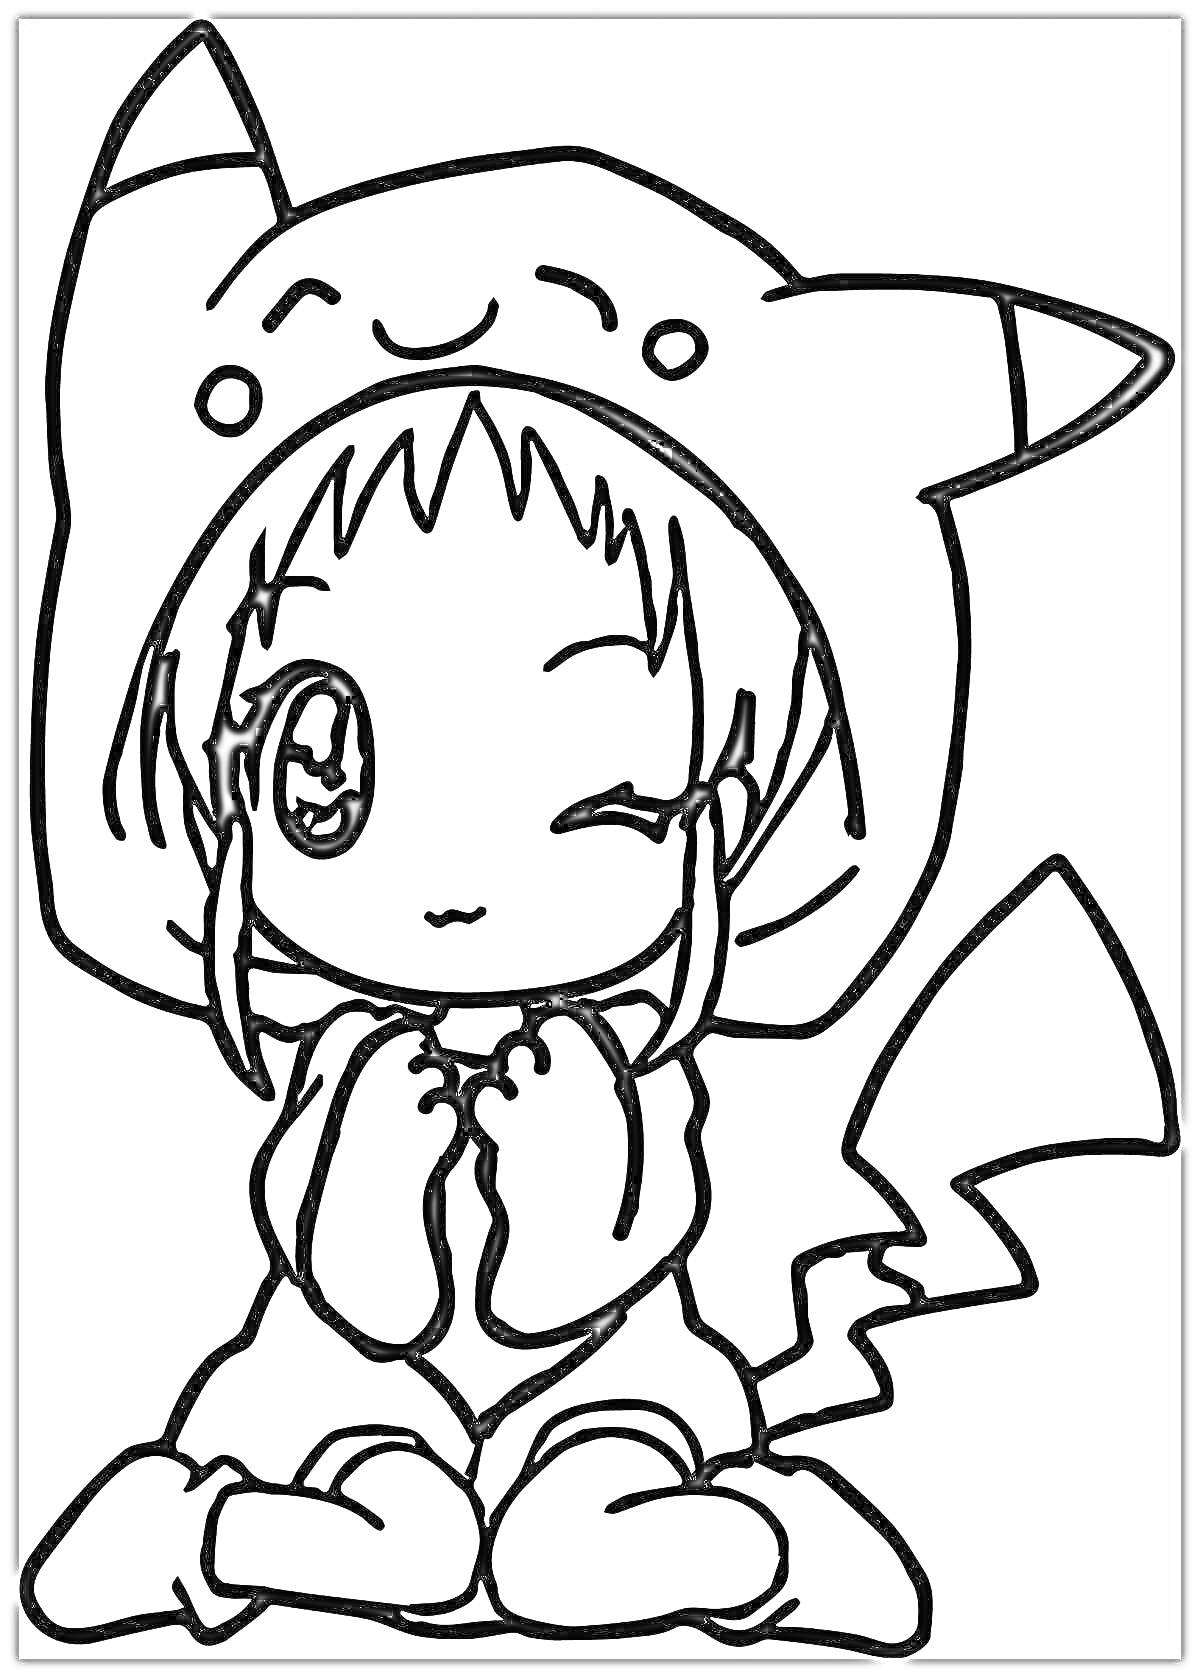 Раскраска Девочка аниме в костюме с ушками и хвостом, сидящая и подмигивающая